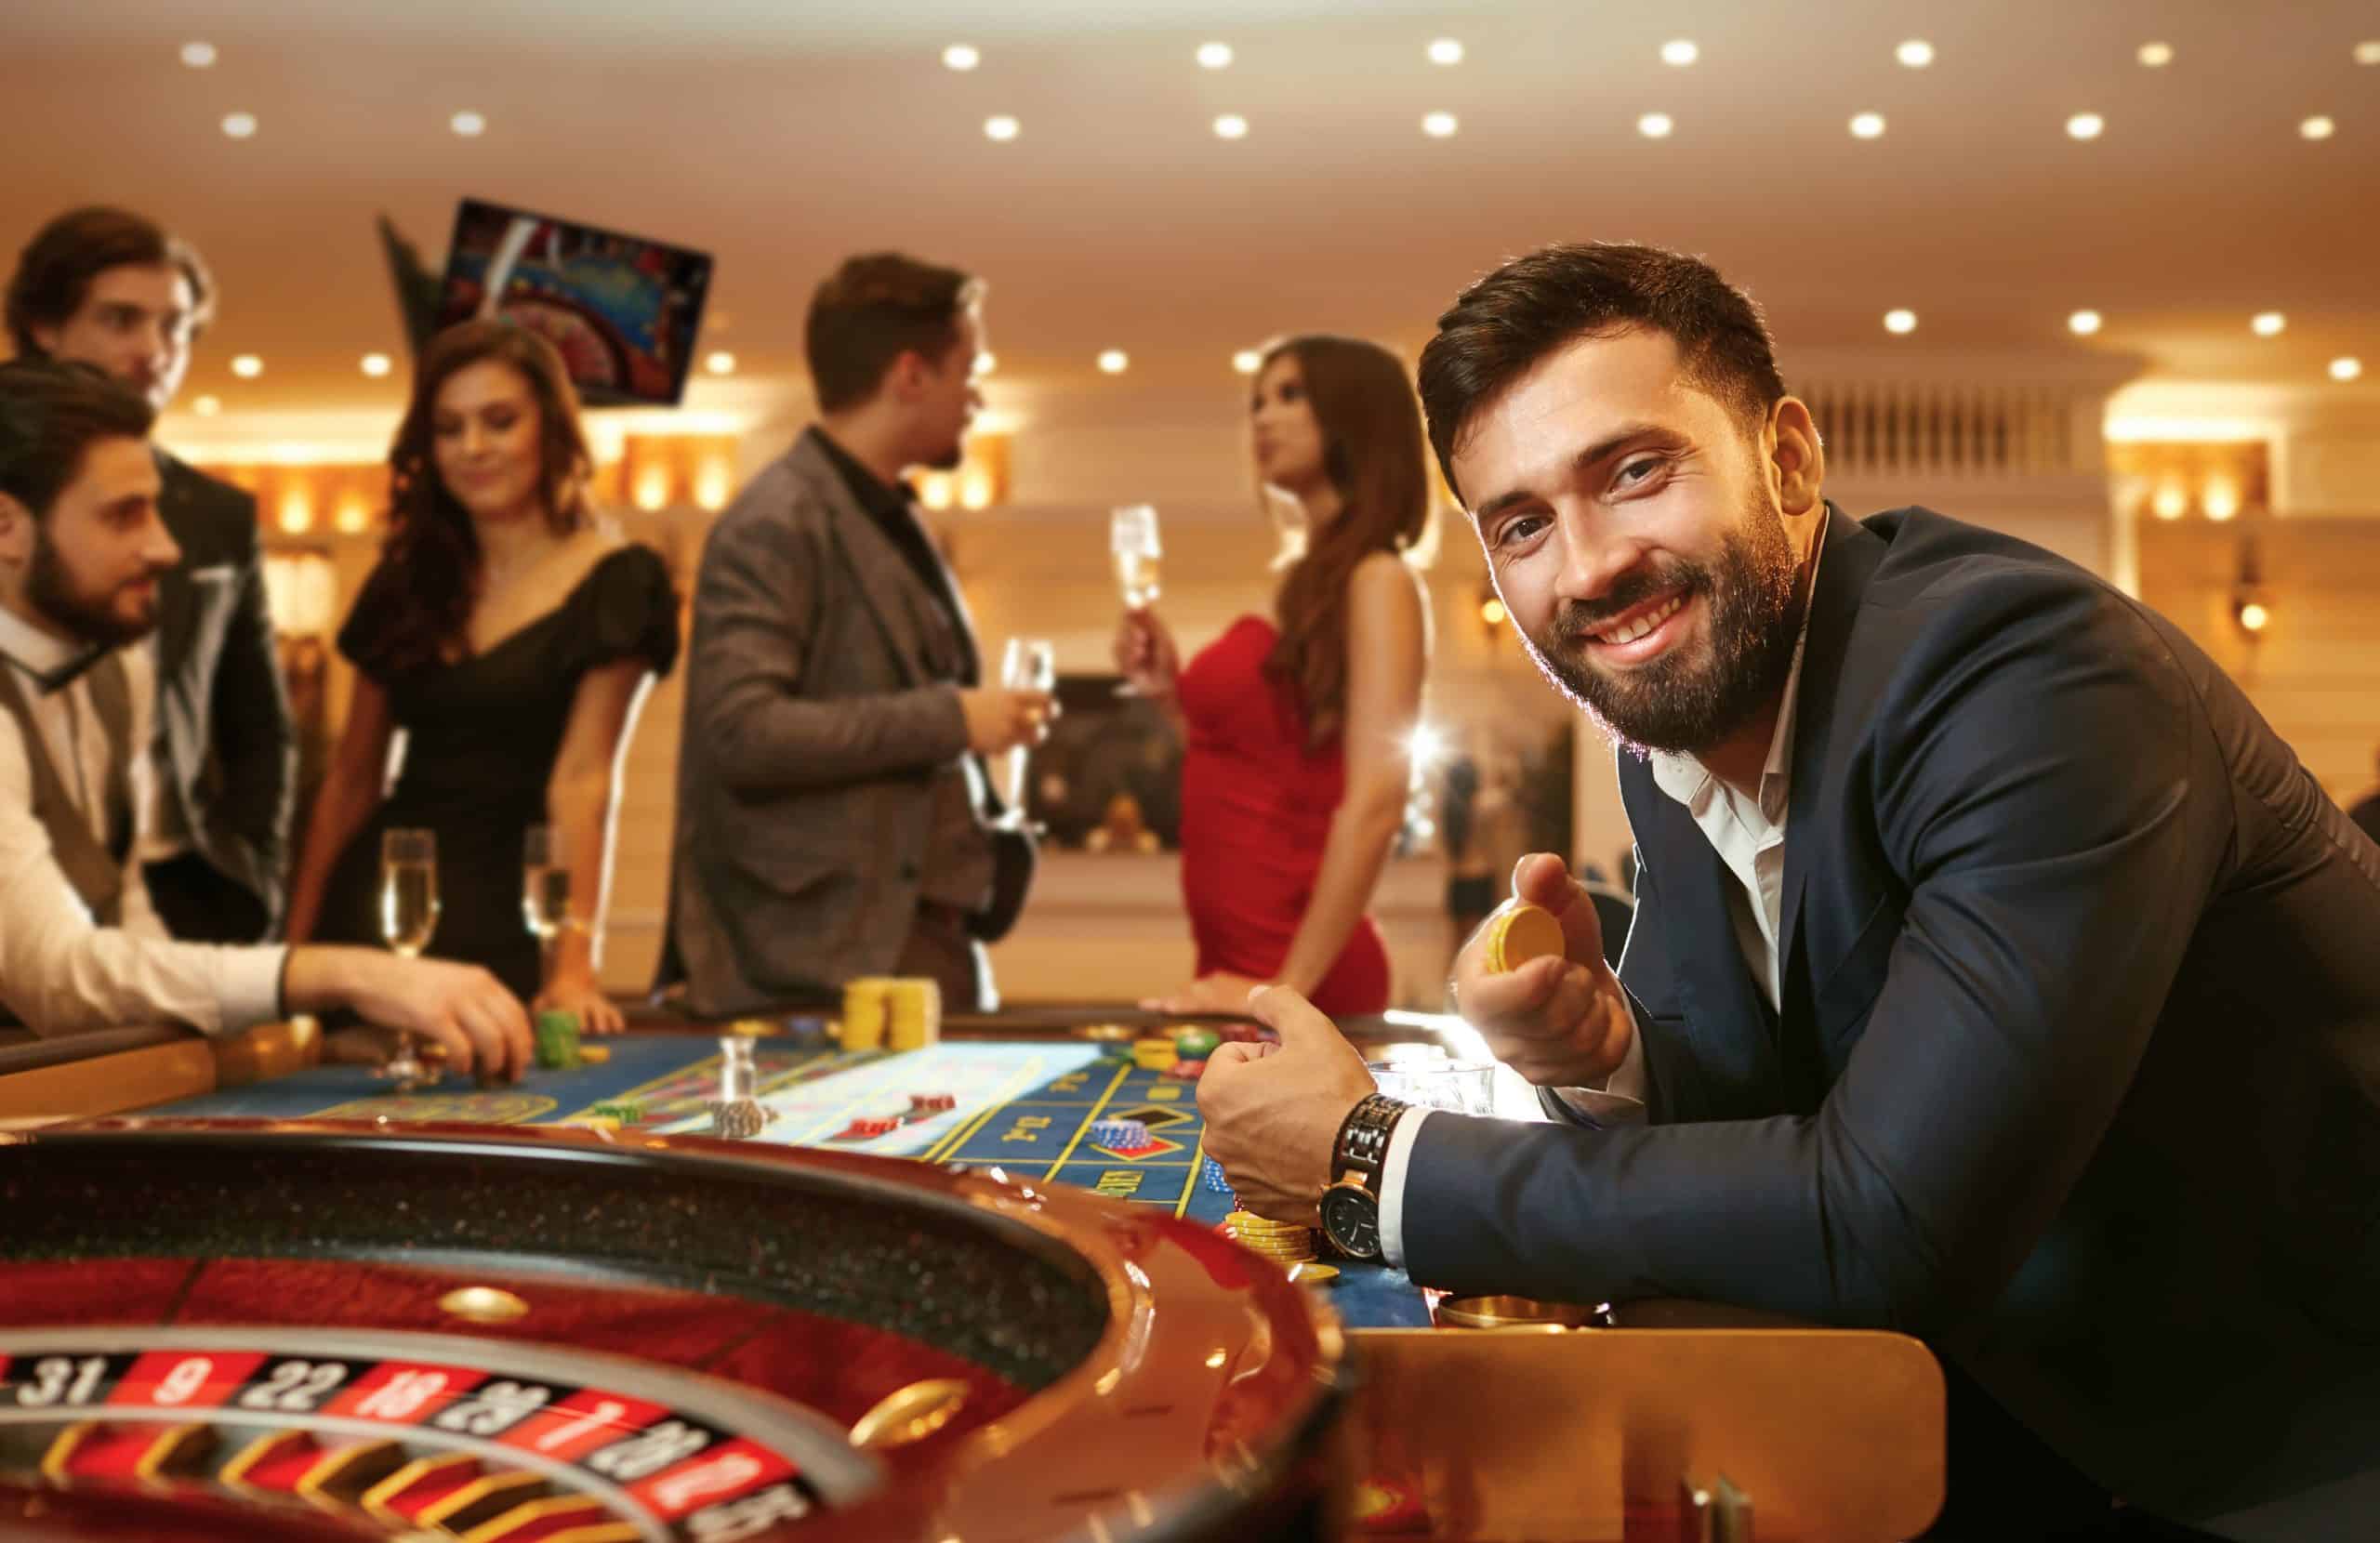 4 pravidlá v kasíne o ktorých sa nehovorí, ale treba ich dodržiavať